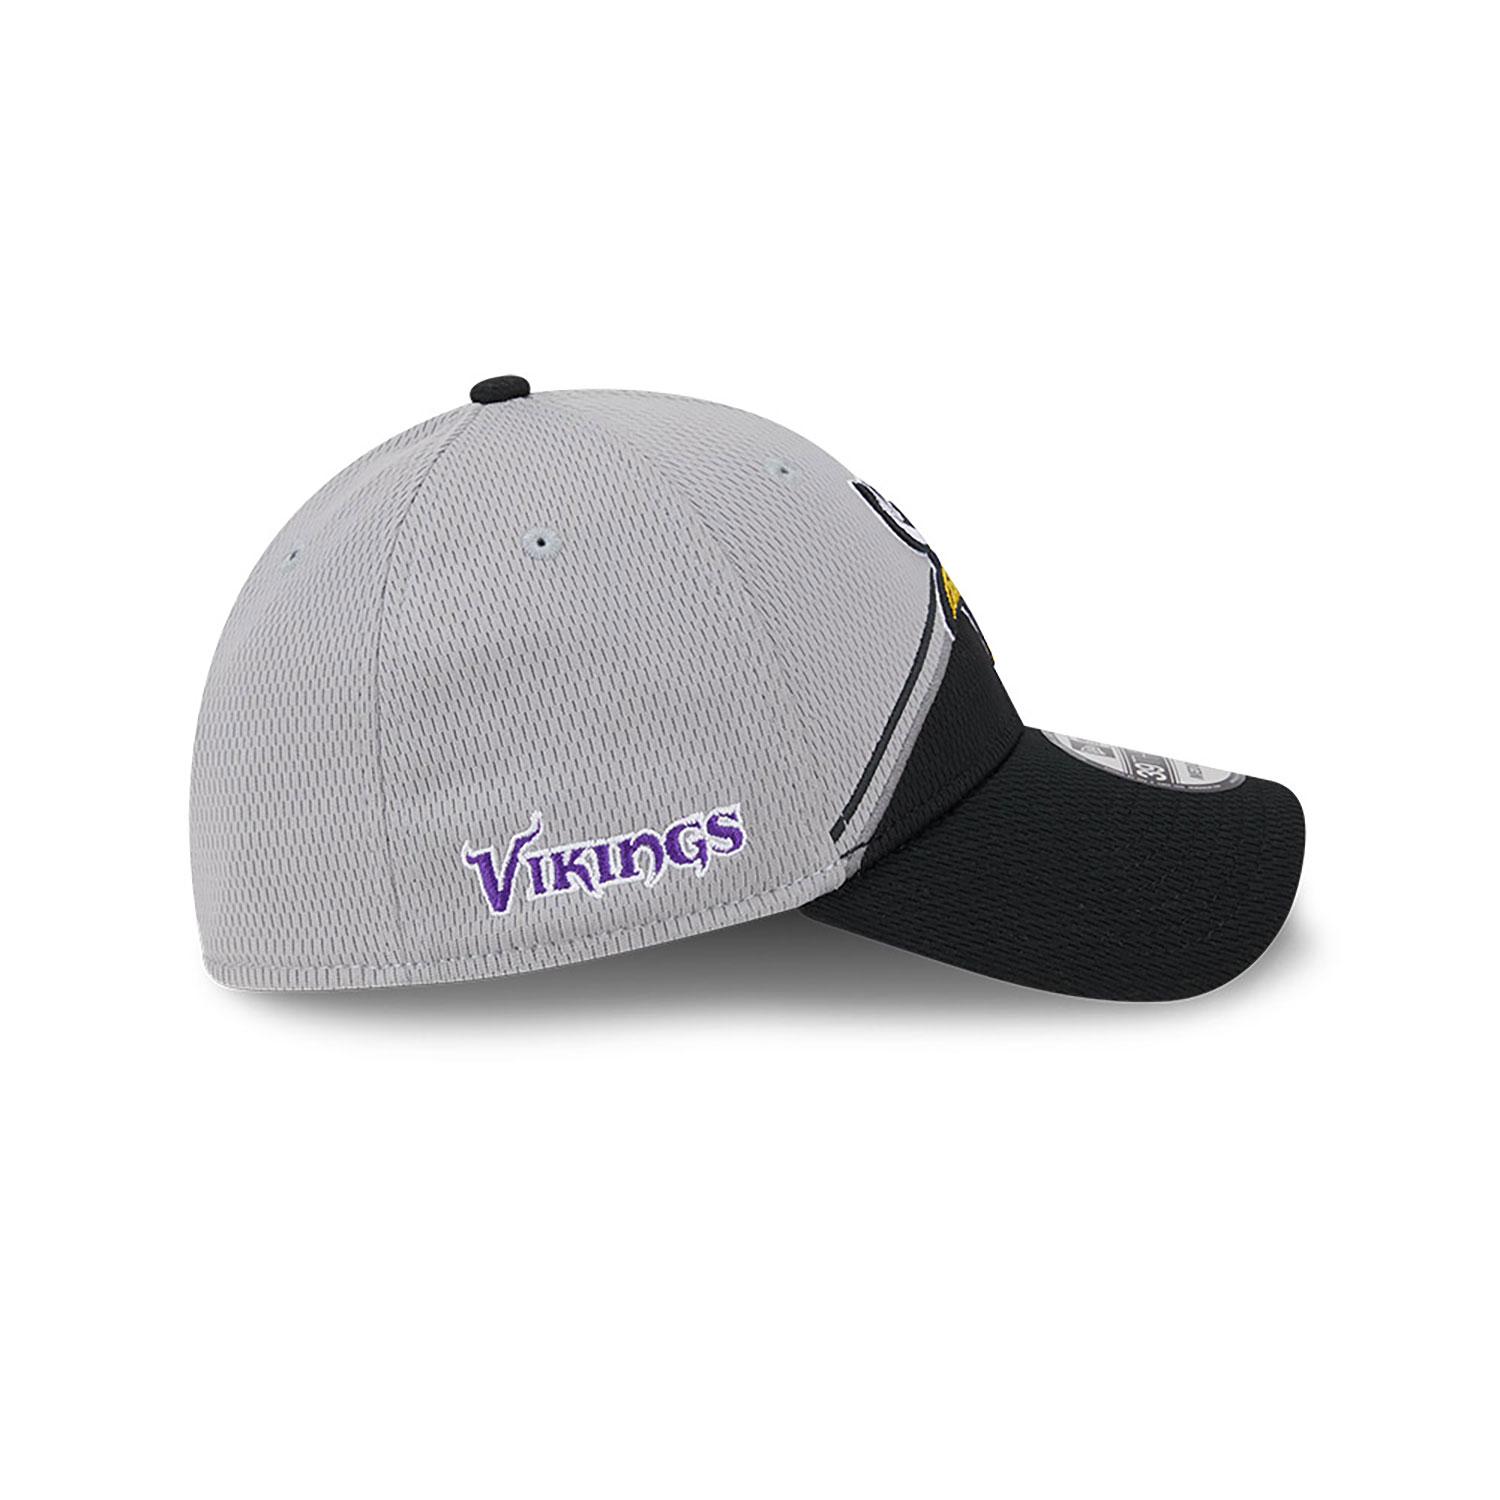 vikings sideline hat